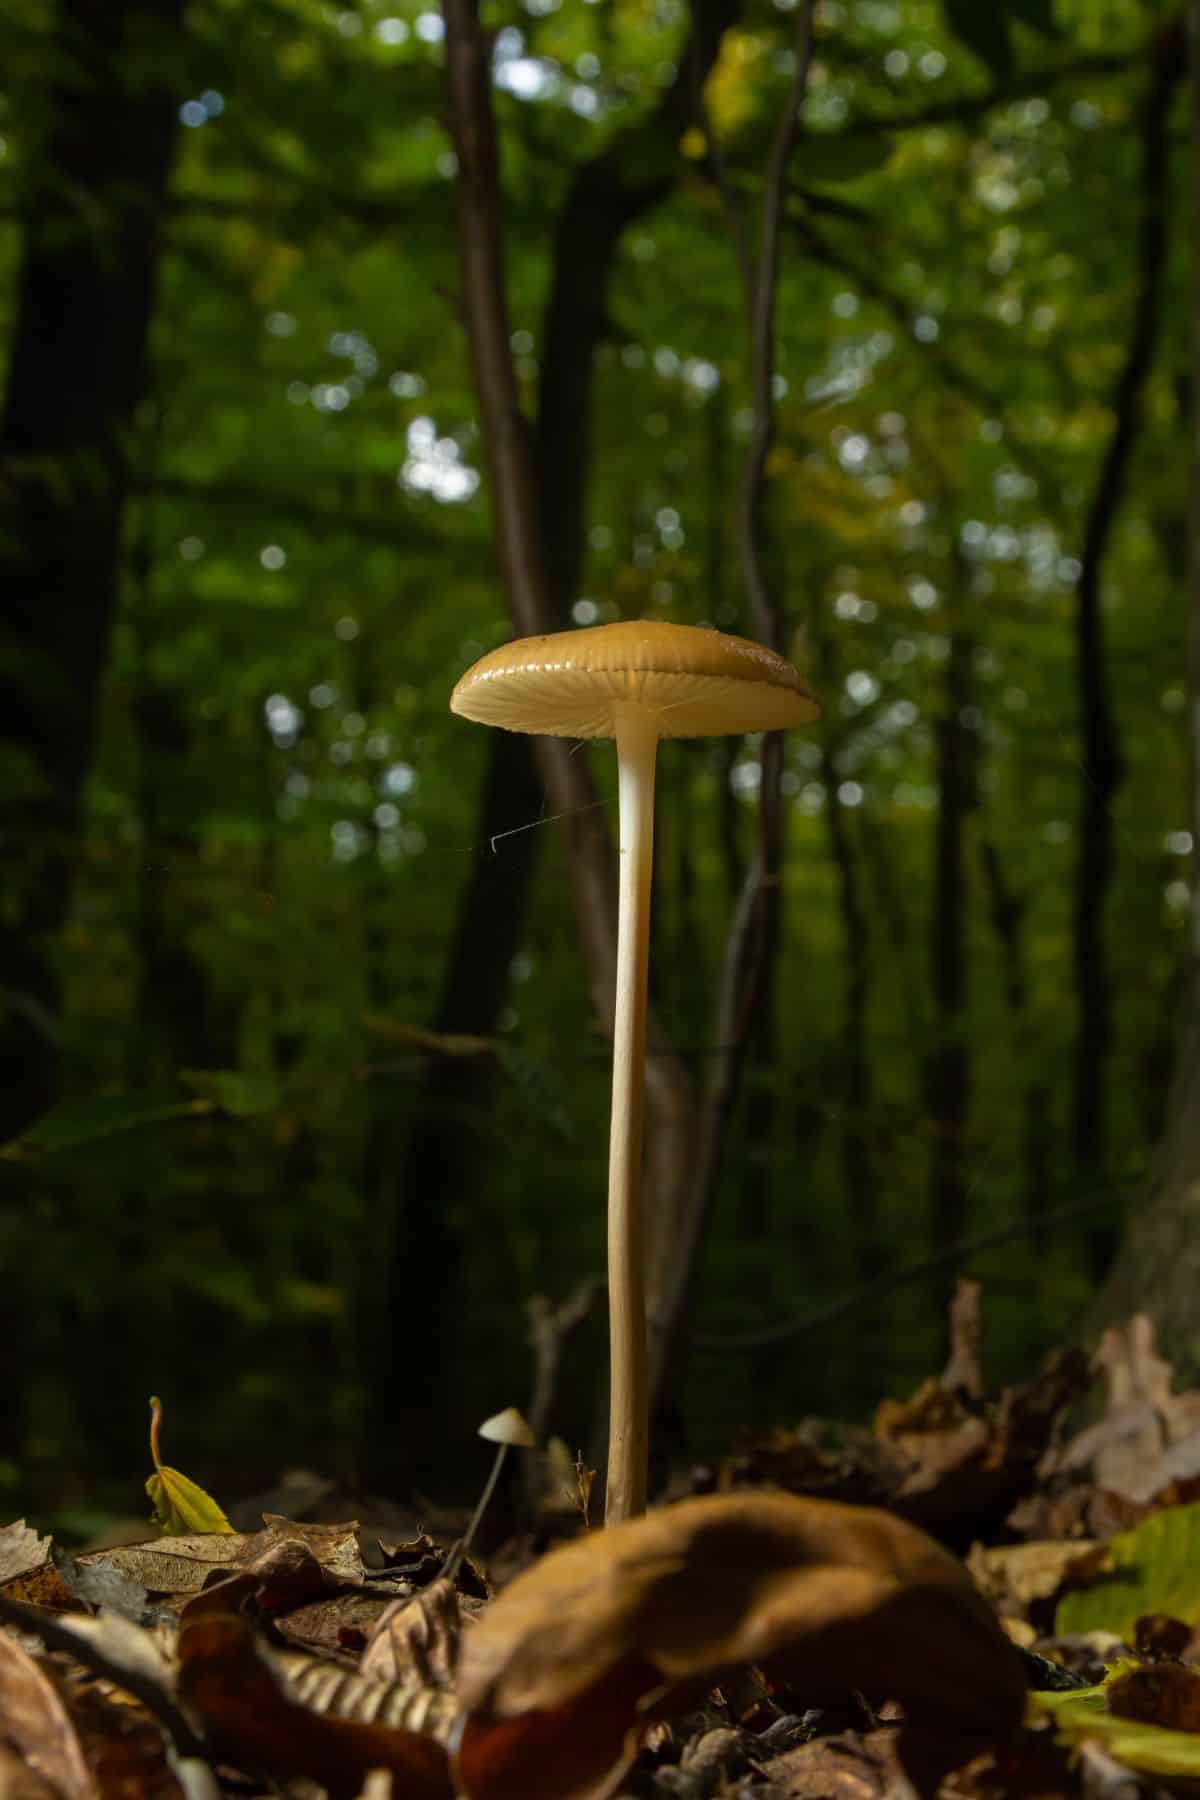 rooting mushroom